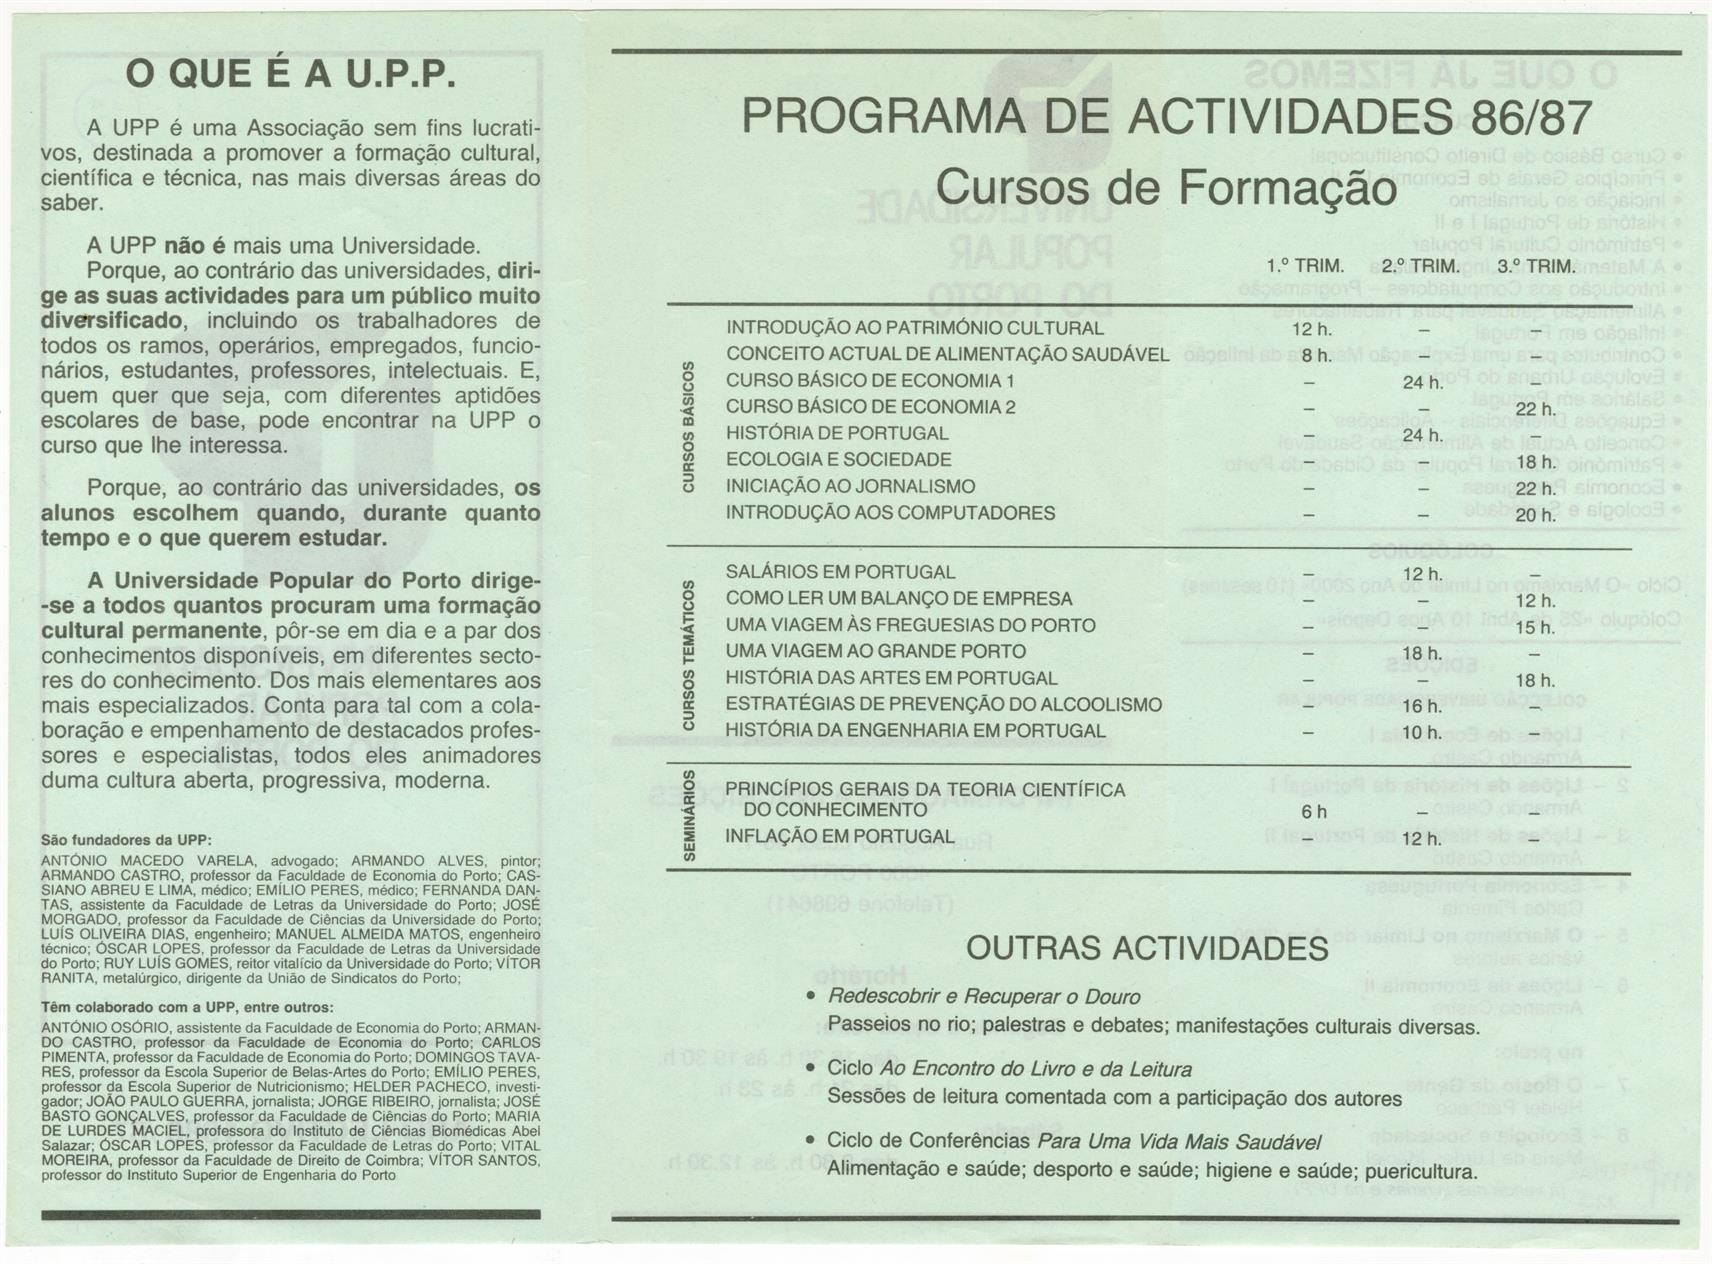 Universidade Popular do Porto : ano letivo 1986-87